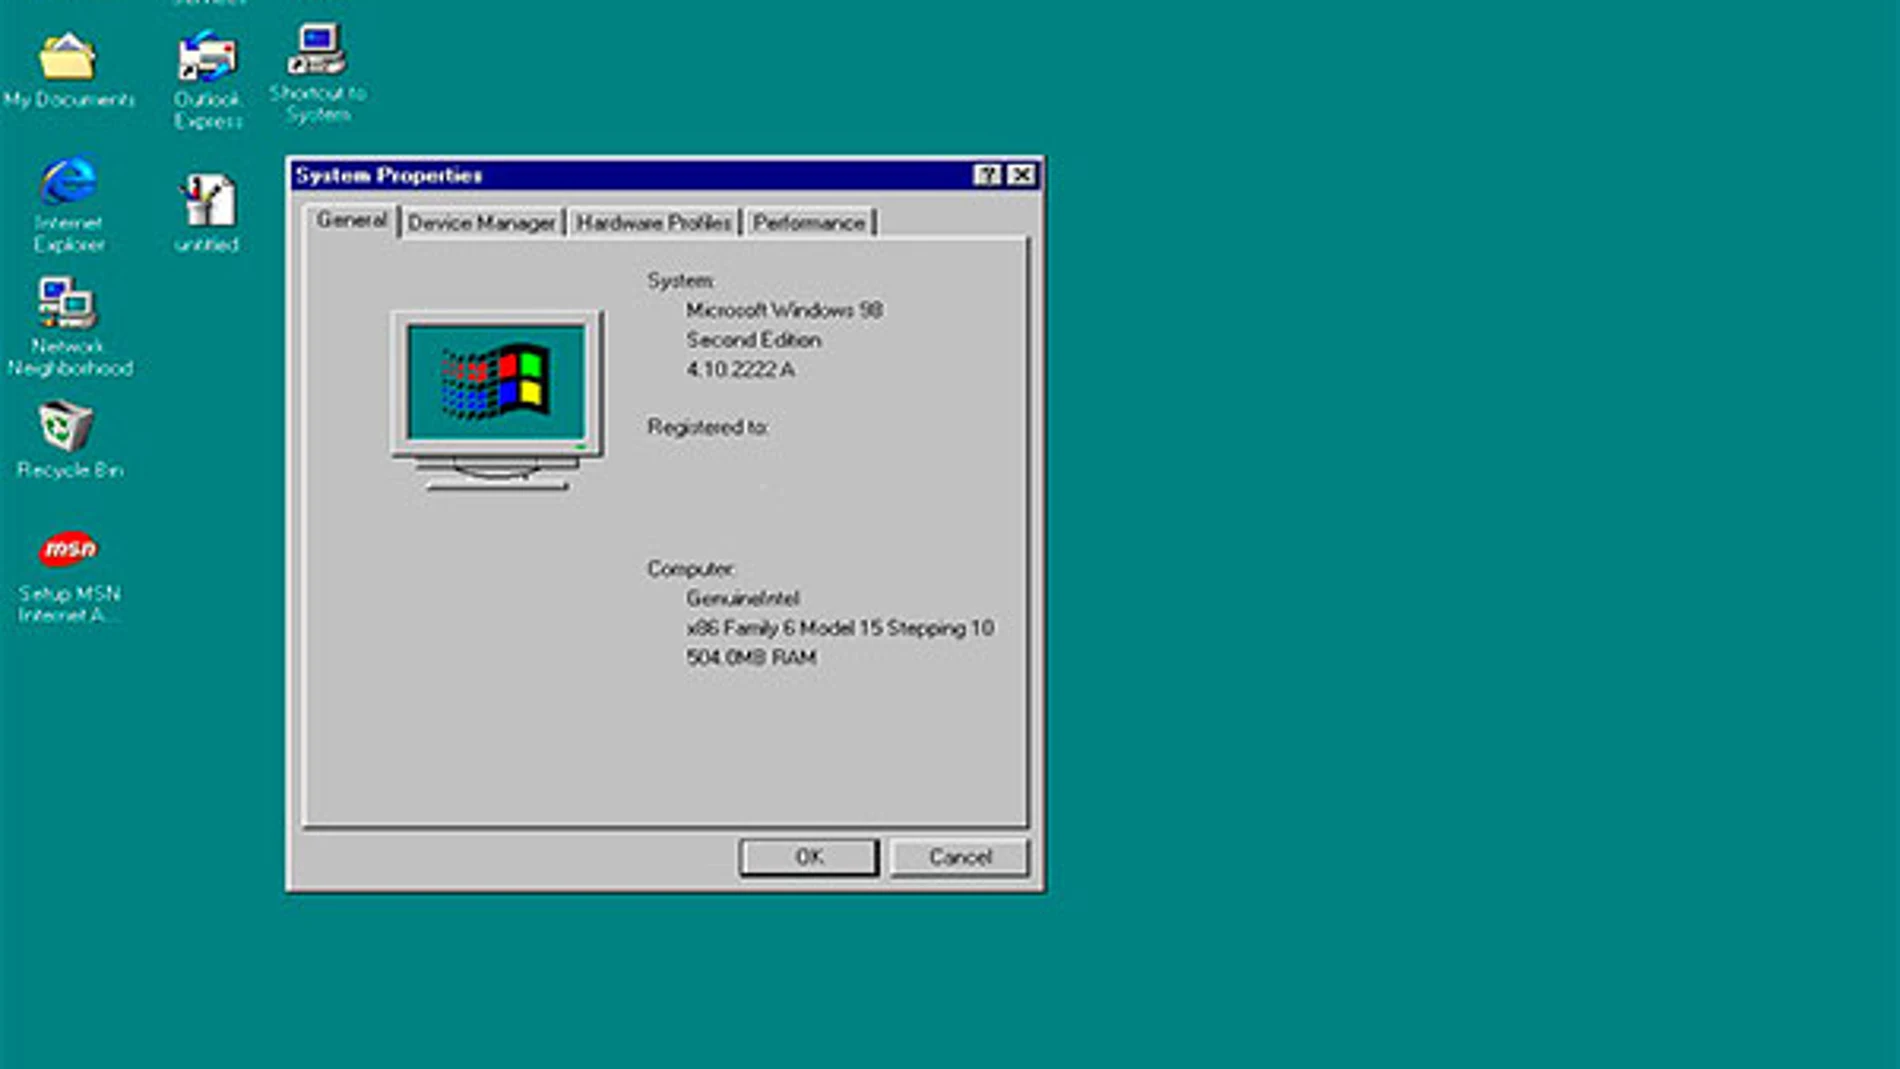 Melissa se convirtió en 1999 en el virus que más rápido se había propagado hasta entonces. Afectaba a equipos con Windows 95, 98, NT y a los sistemas Macintosh también.